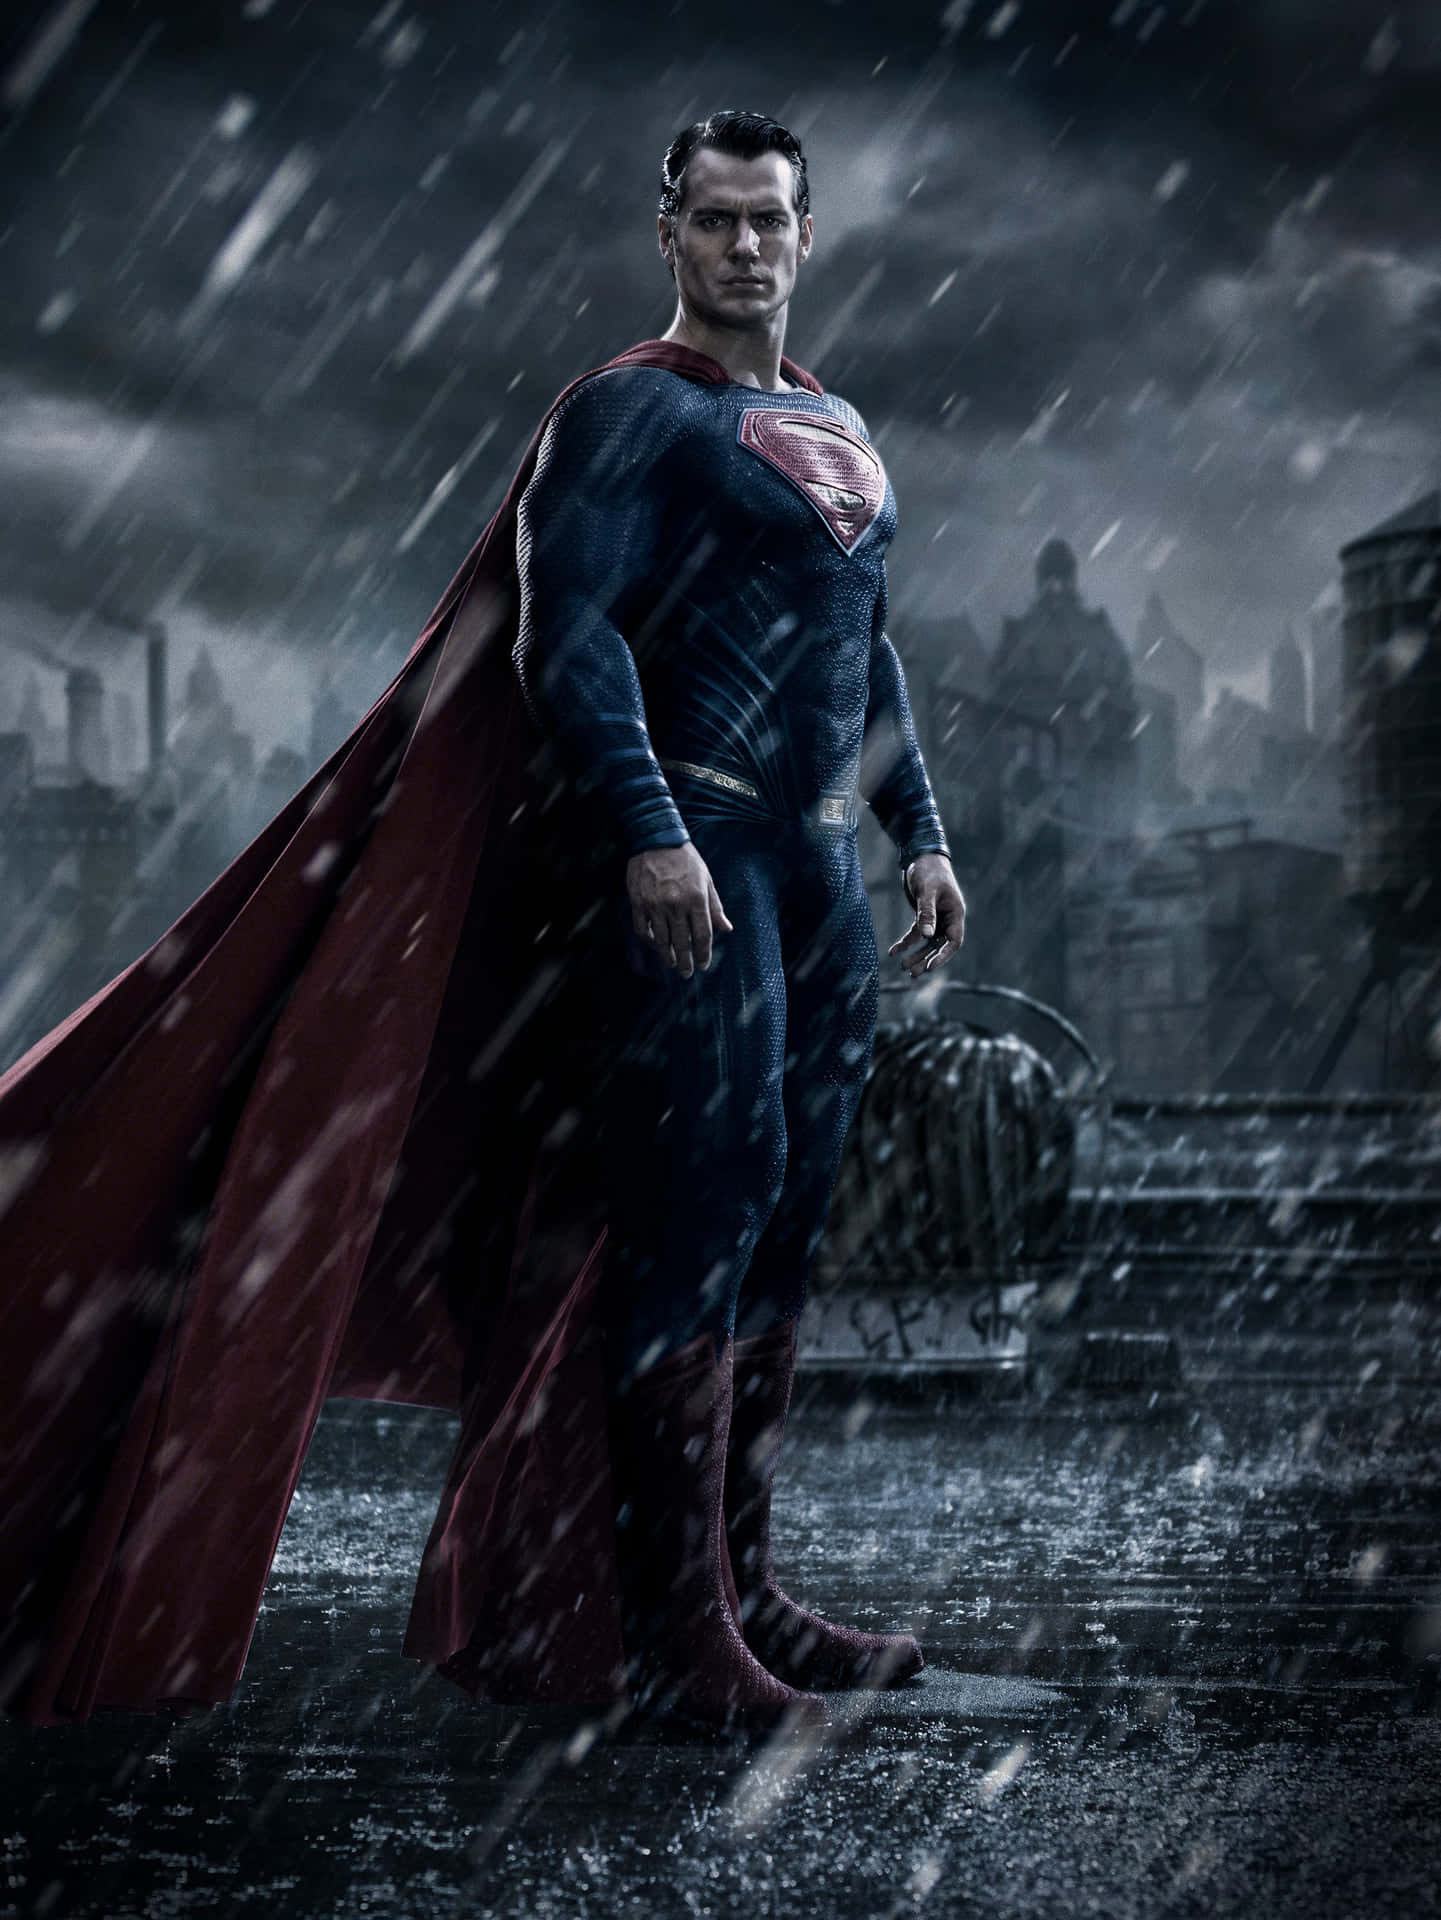 Supermansurcando Los Cielos Para El Rescate Supremo